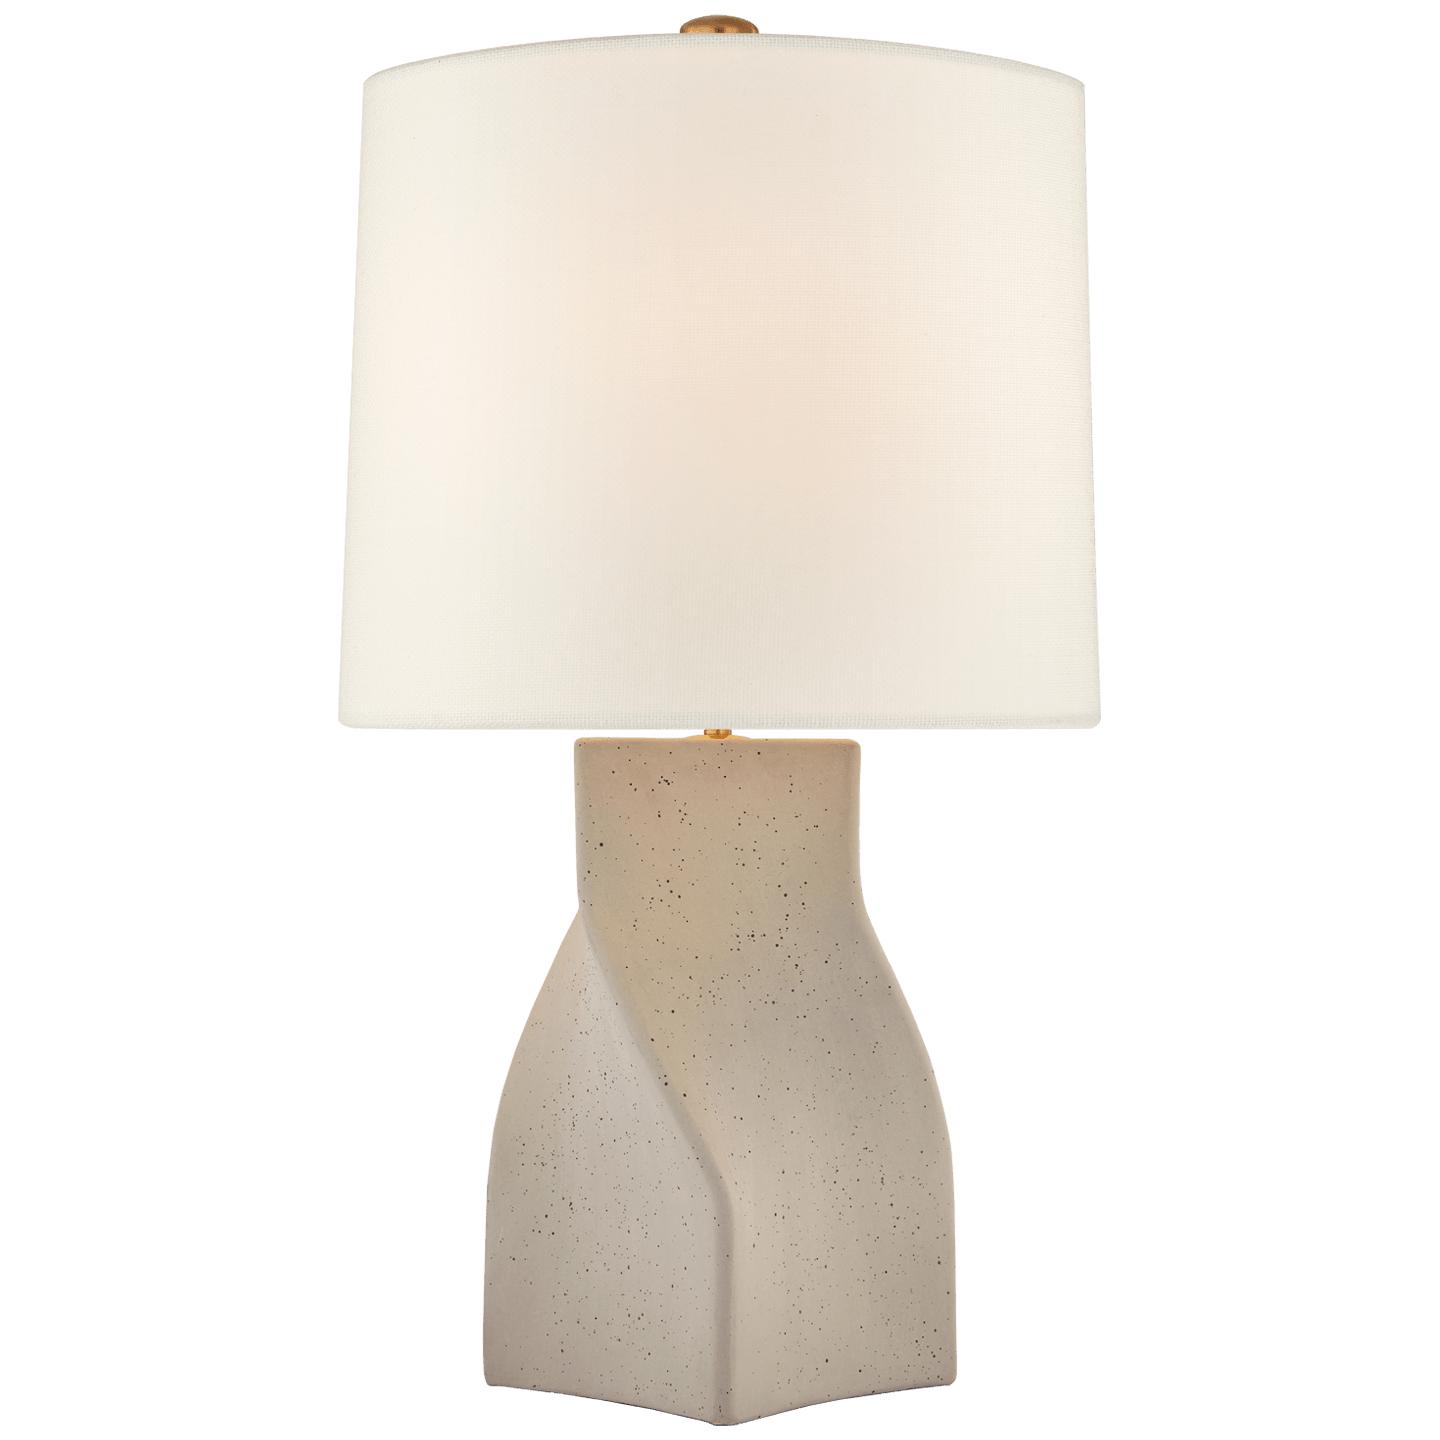 Купить Настольная лампа Claribel Large Table Lamp в интернет-магазине roooms.ru